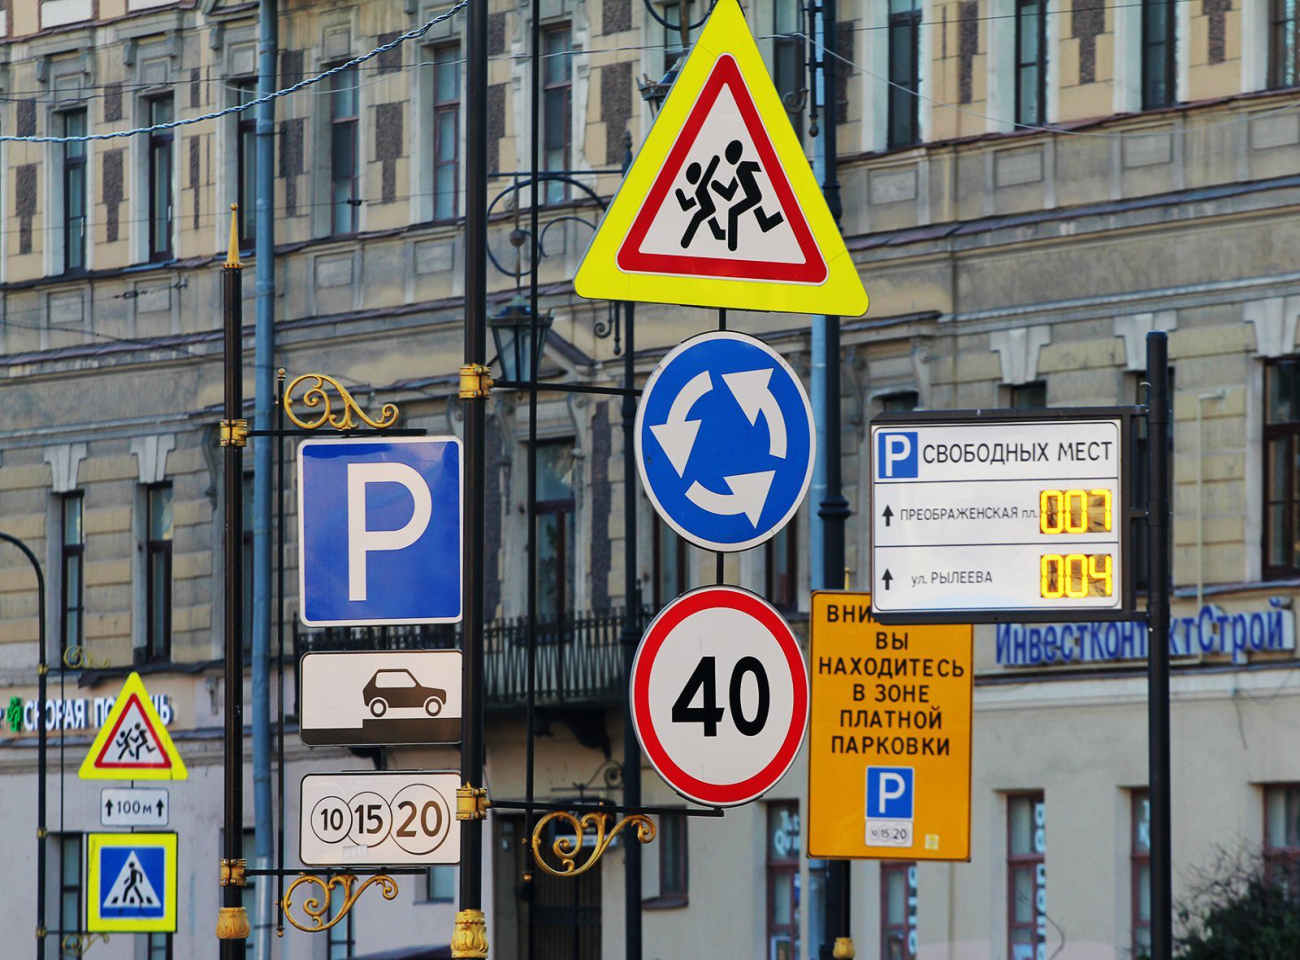 Ключевые особенности установки дорожных знаков: Гарантия безопасности на дорогах